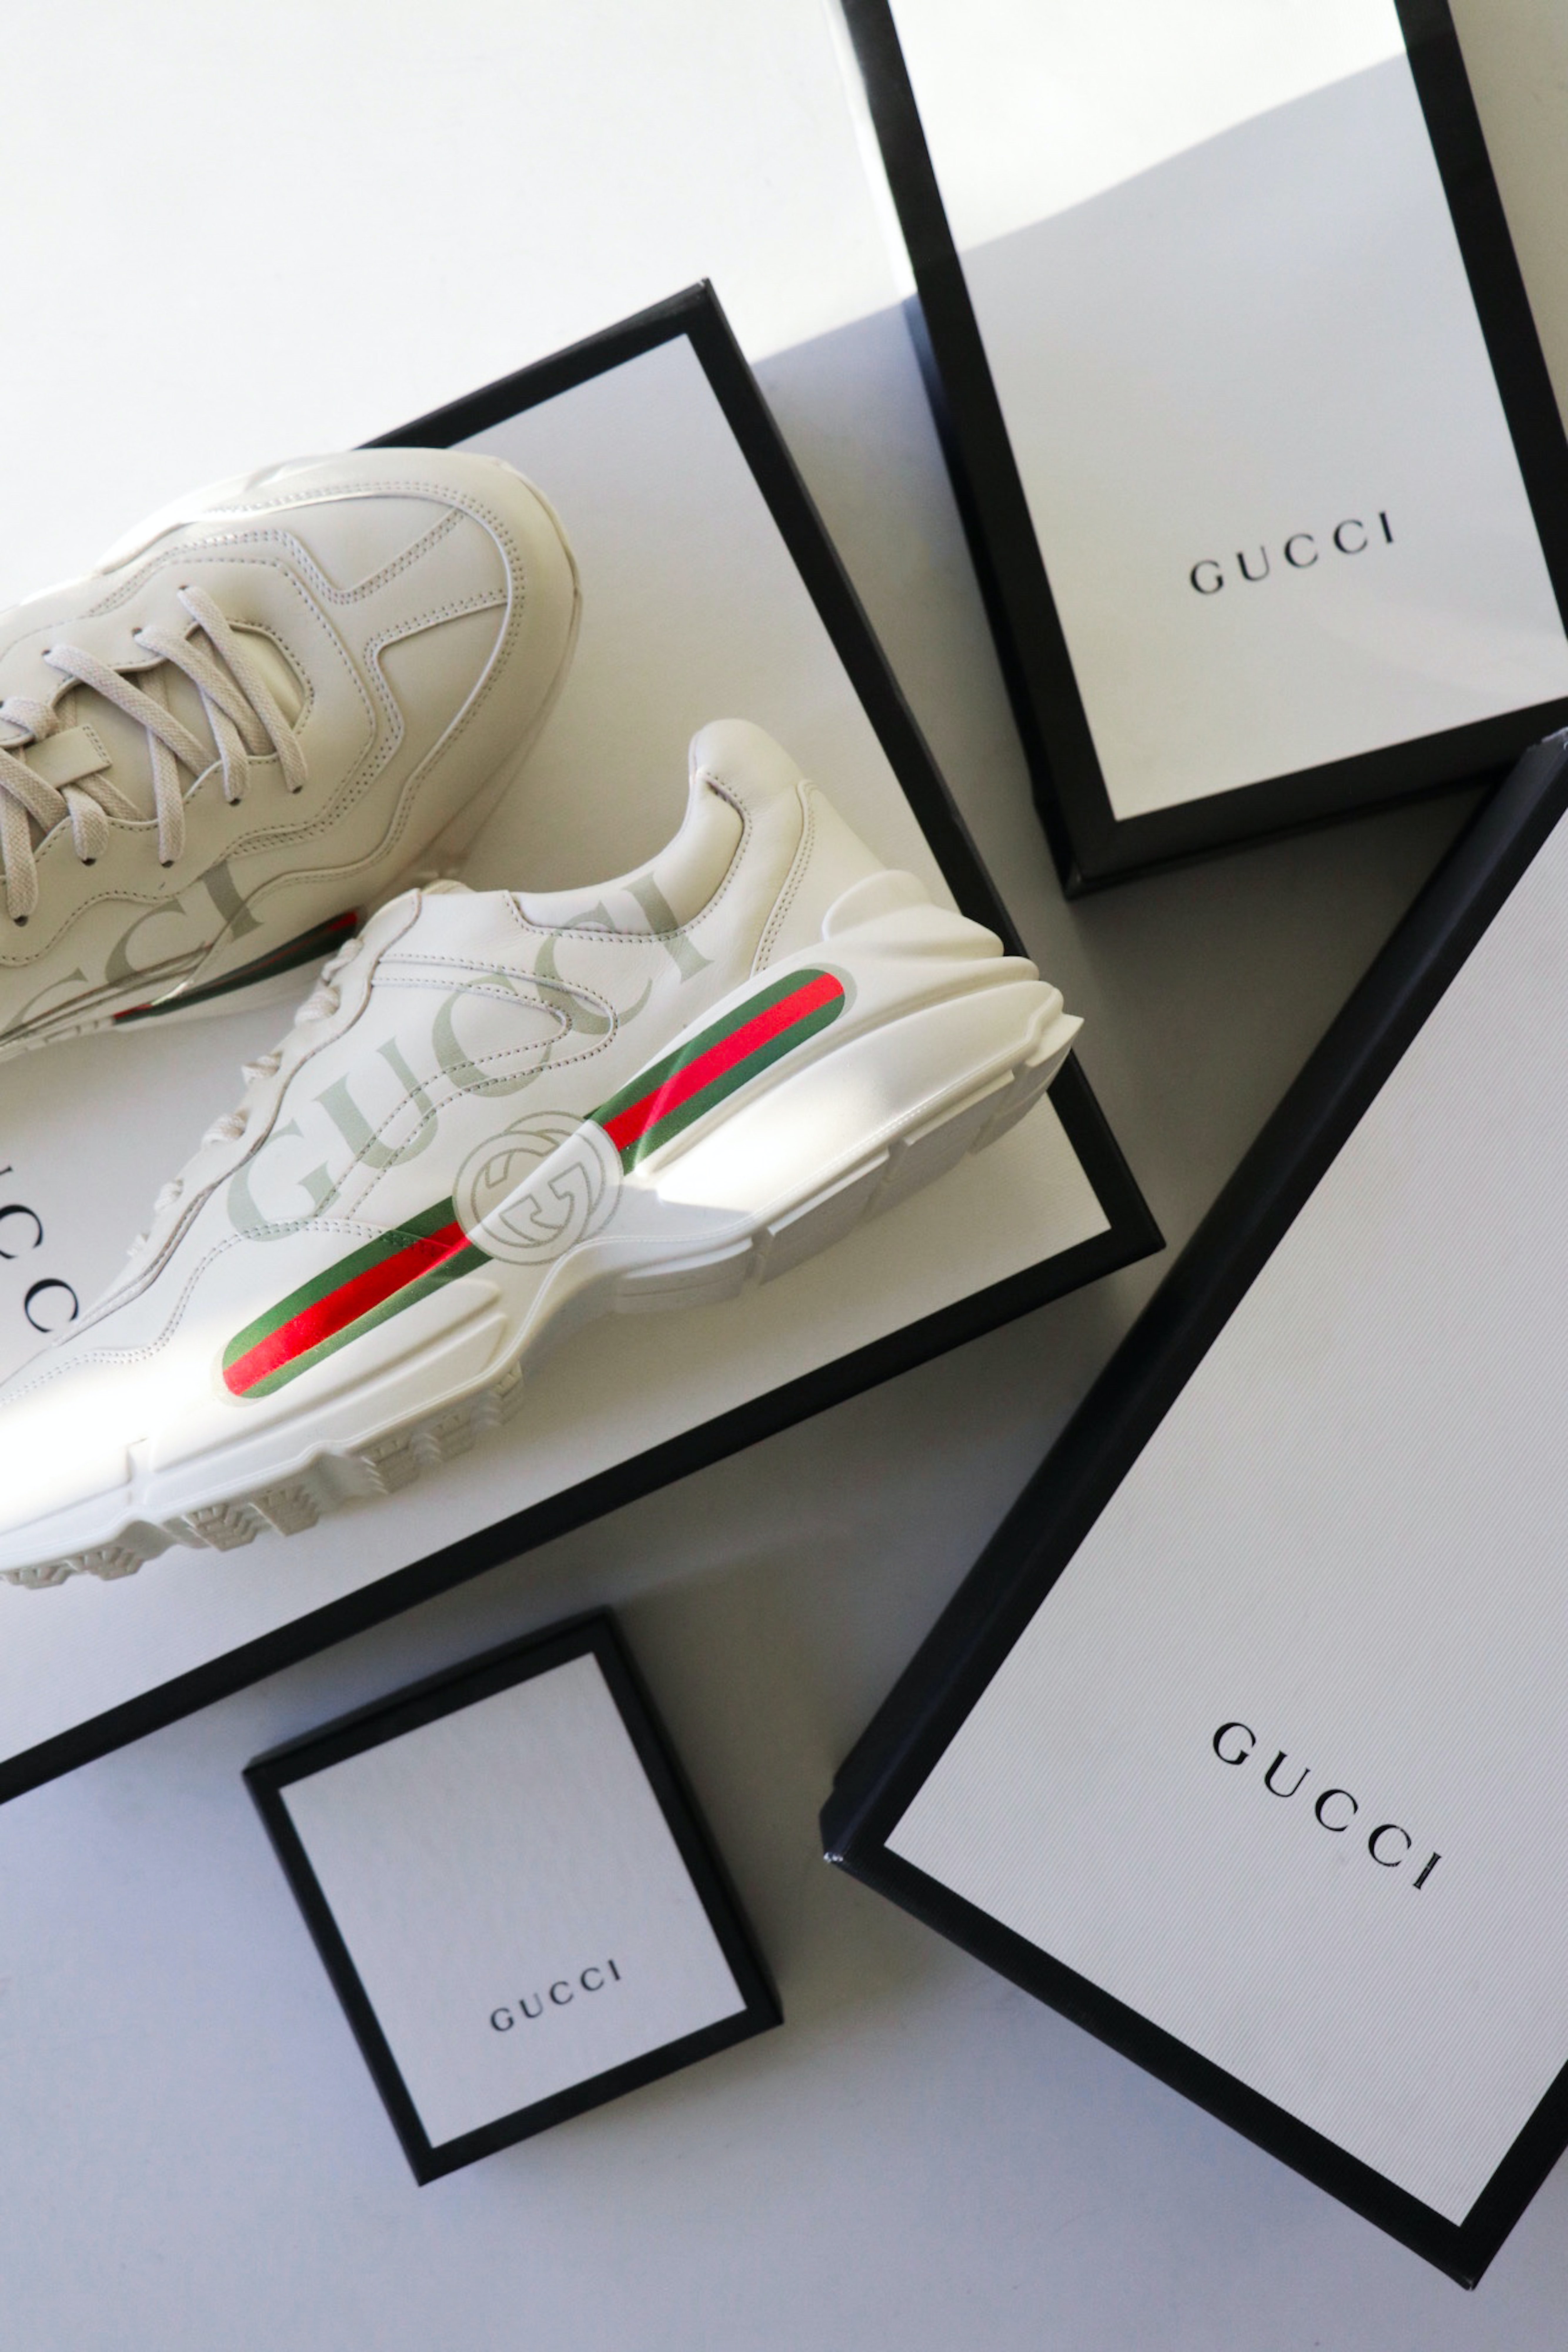 designer wallet brands : Gucci